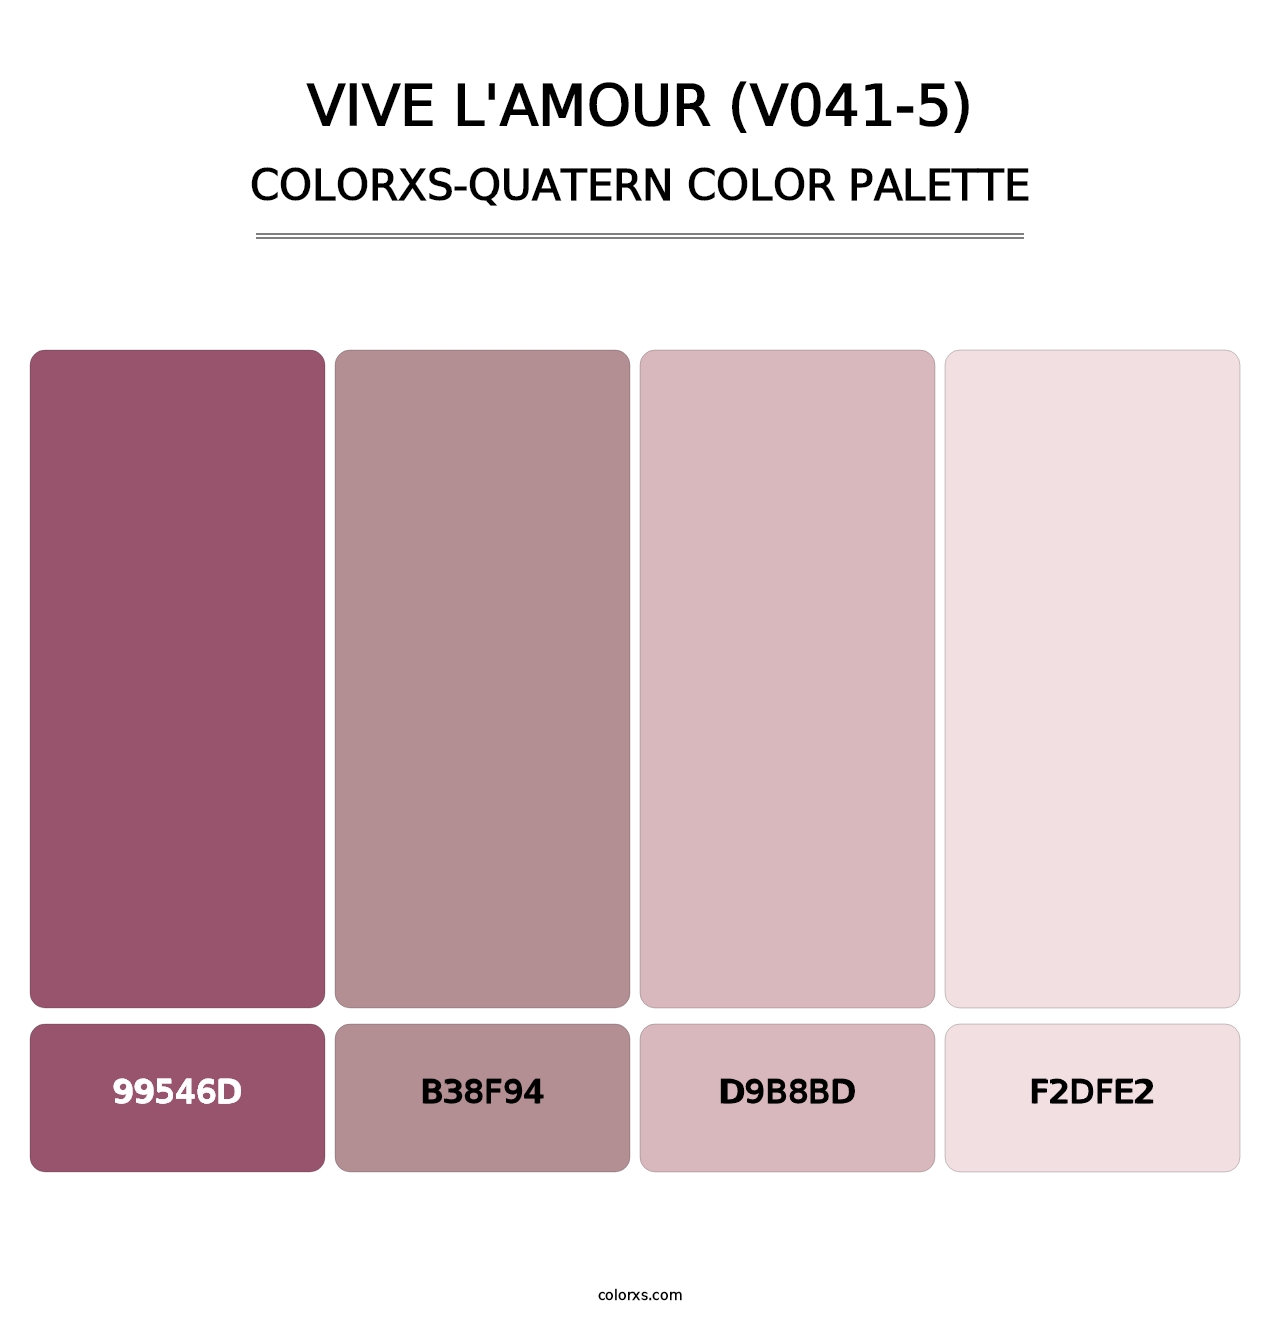 Vive l'amour (V041-5) - Colorxs Quatern Palette